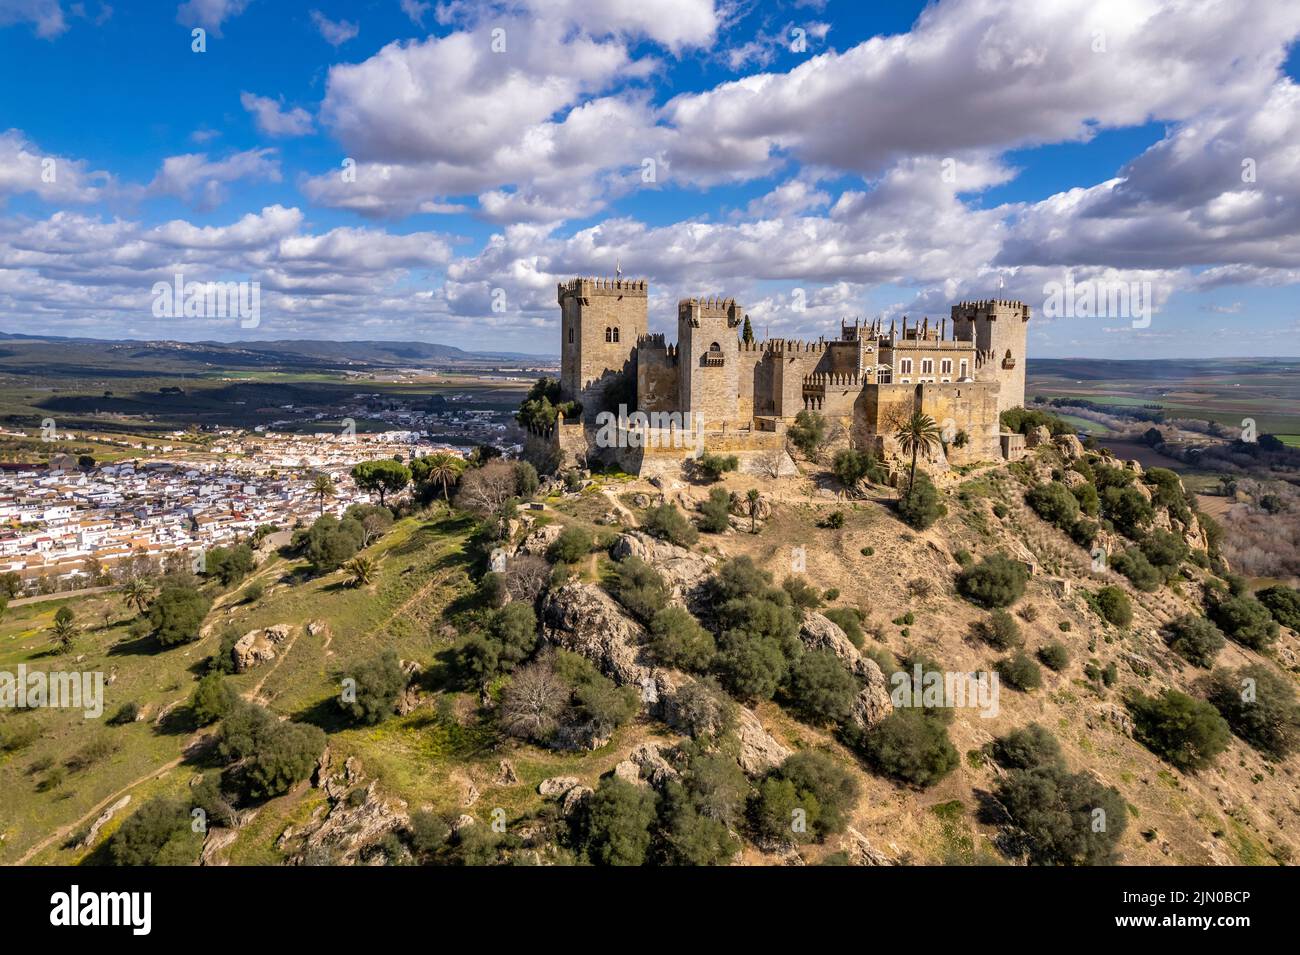 Die Burg Castillo de Almodóvar del Río und das Dorf Almodóvar del Río, Andalusien, Spanien | Castillo de Almodóvar del Río y el pueblo de Foto de stock